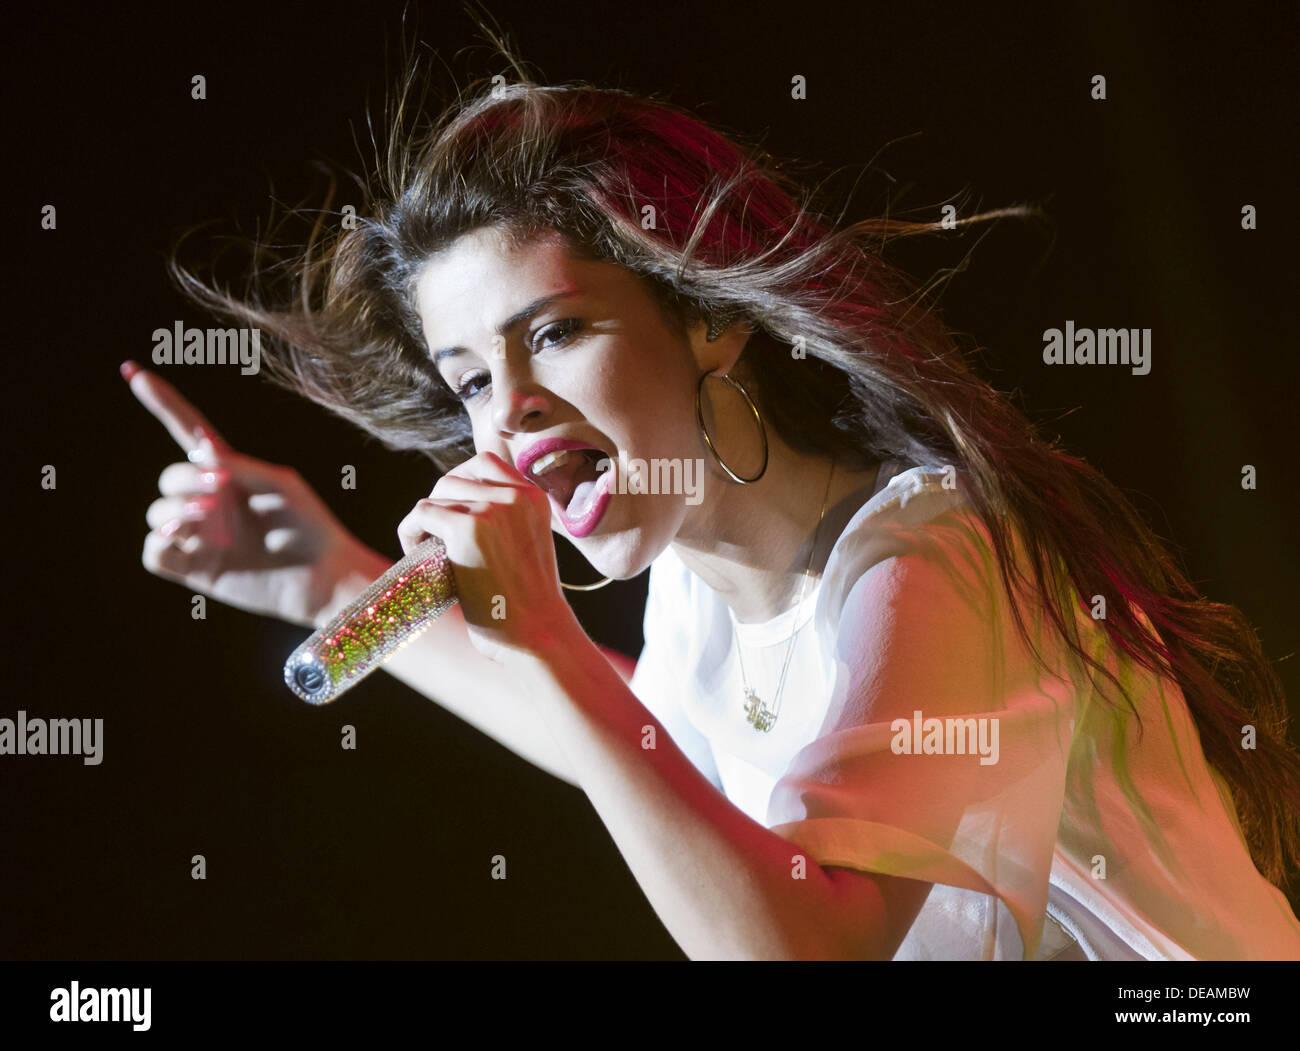 Francoforte, Germania. Xiv Sep, 2013. Noi attrice e cantante Selena Gomez esegue sul palco durante il suo primo e unico concerto in Germania a Francoforte, in Germania, il 14 settembre 2013. Foto: Frank Rumpenhorst/dpa/Alamy Live News Foto Stock